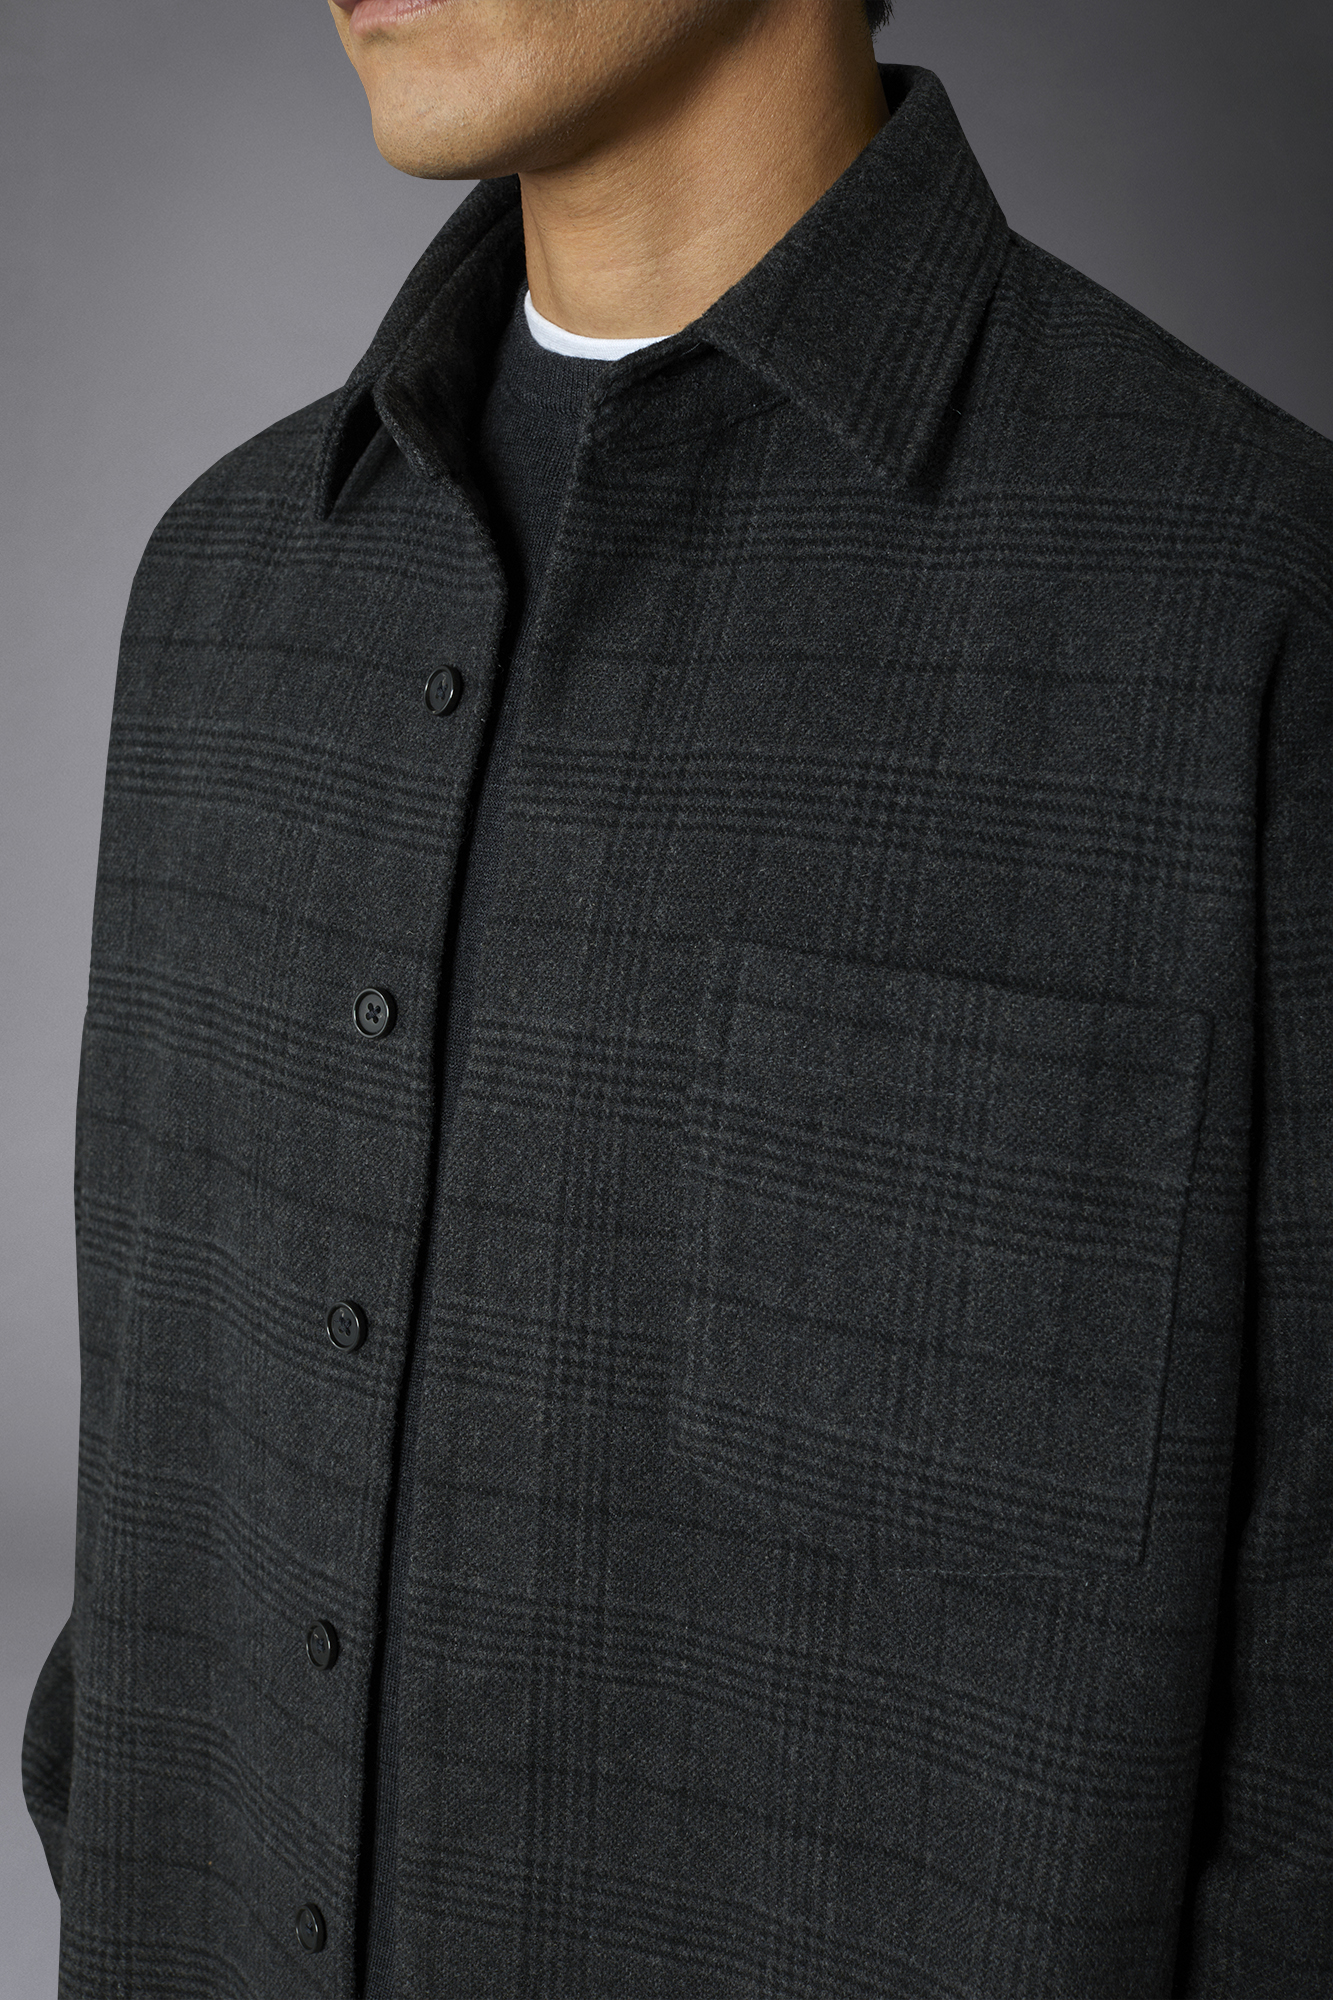 Hemdjacke aus Wollmischgewebe mit Karomuster, regulärer Schnitt image number null